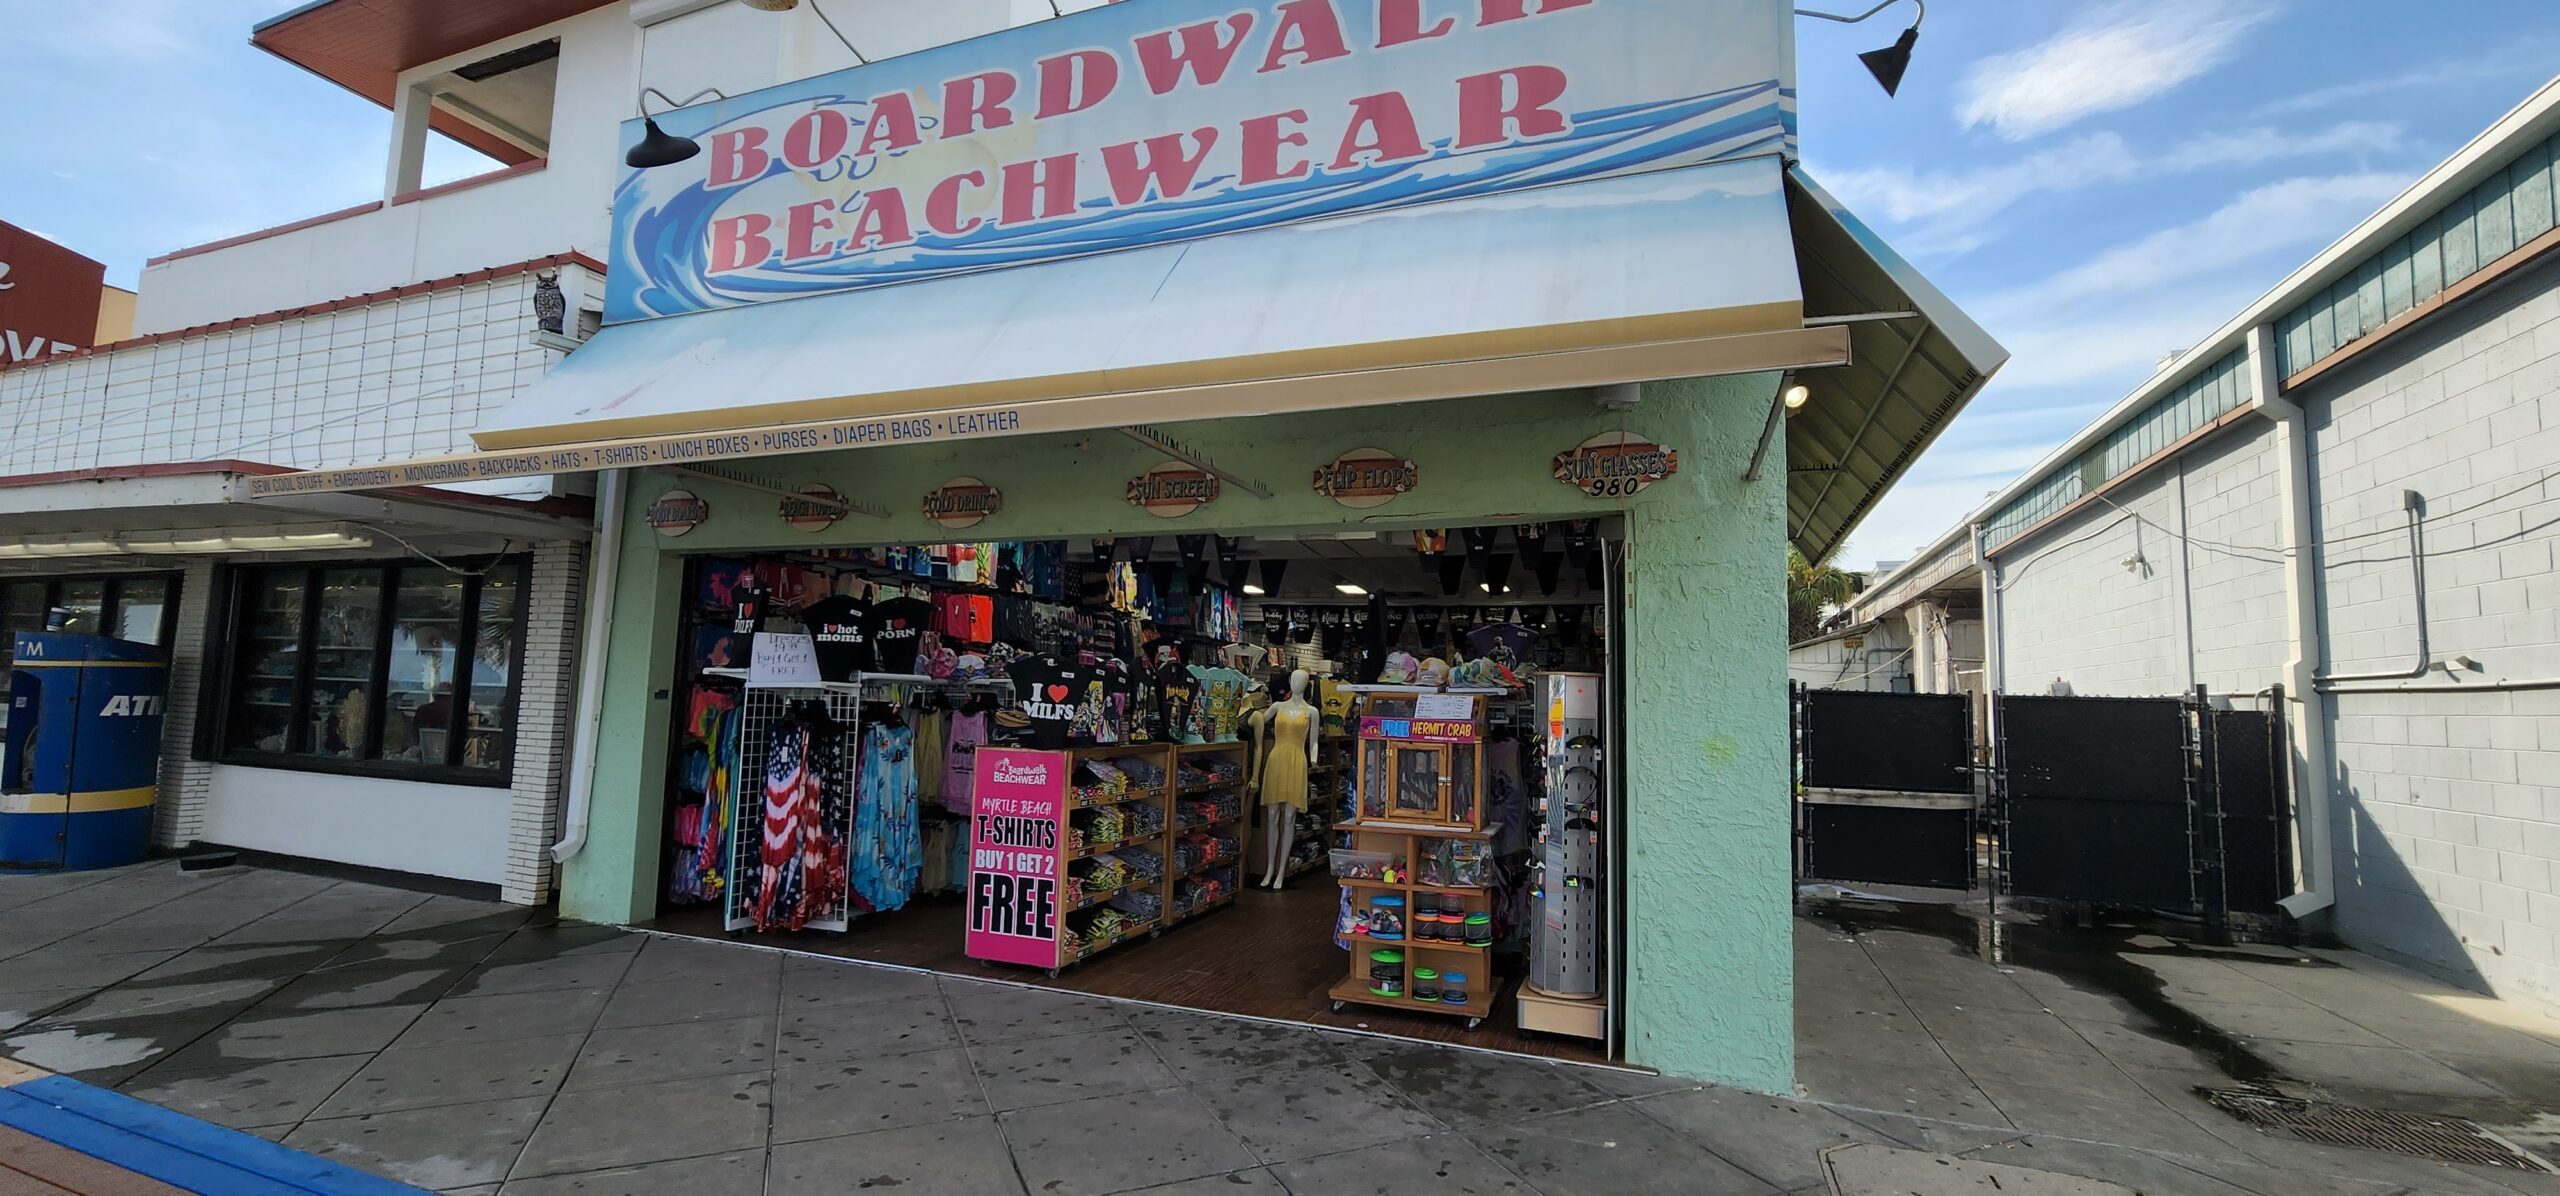 Boardwalk Beachwear